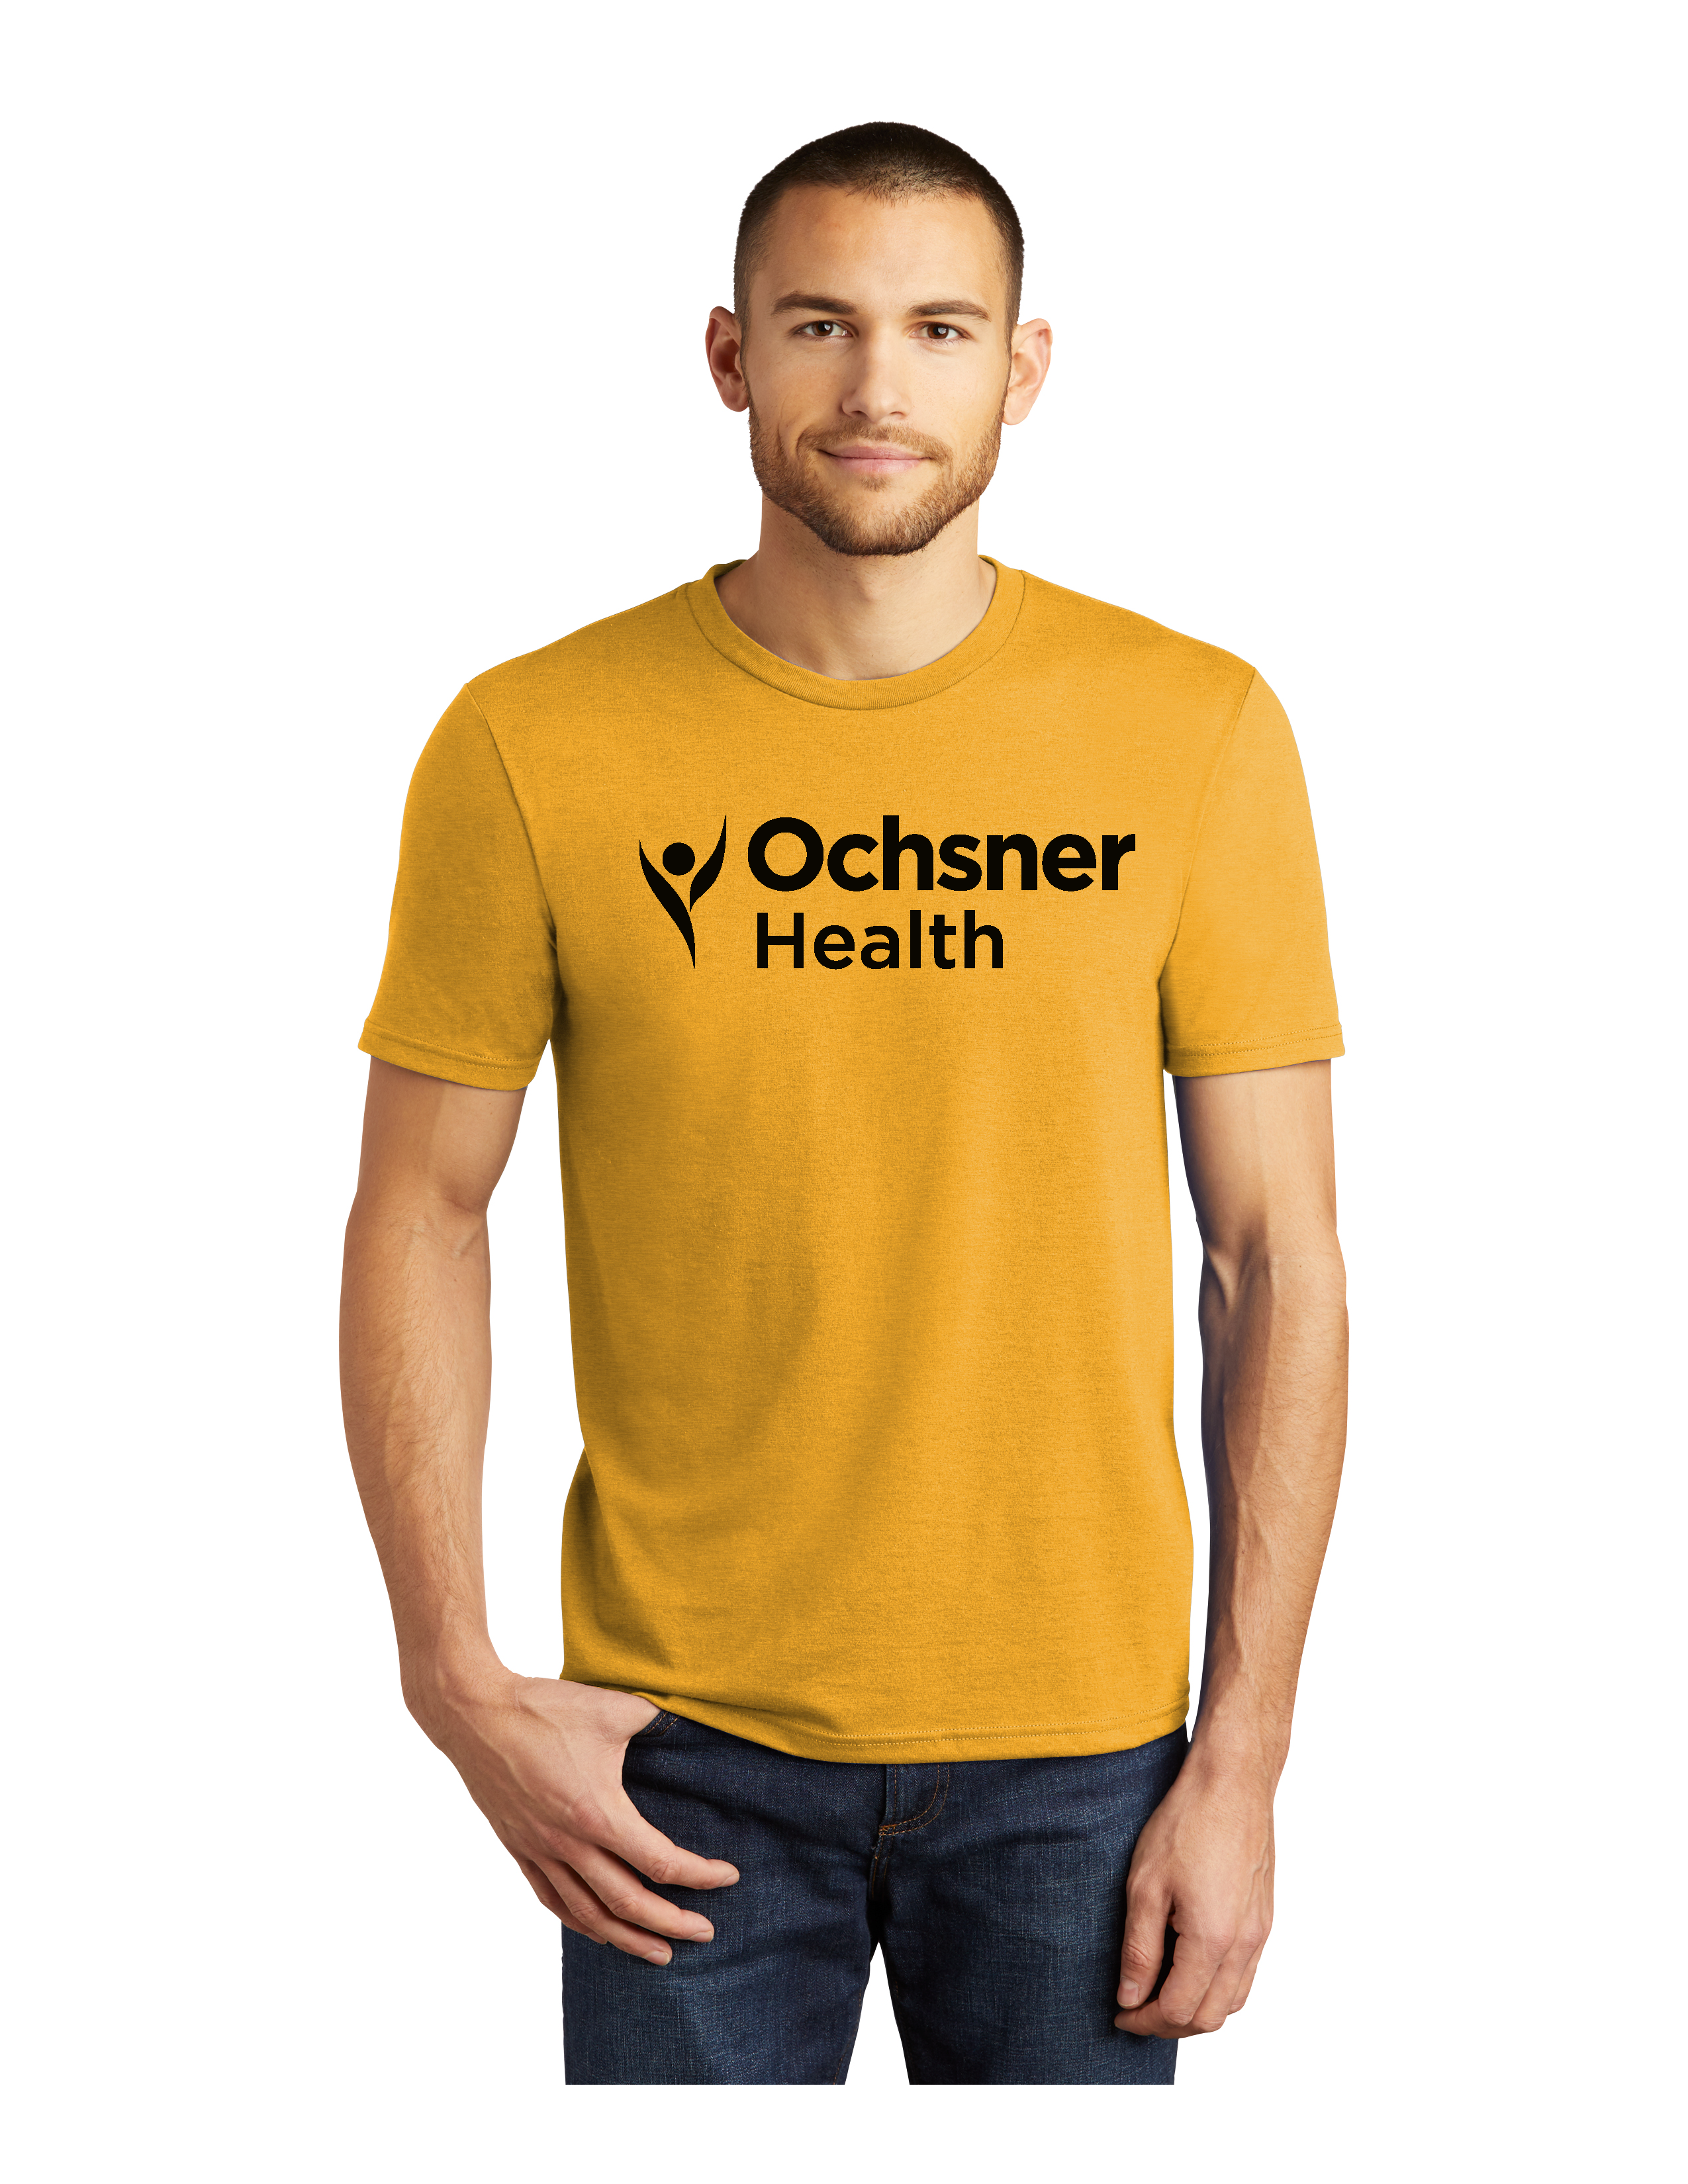 Ochsner Saints Unisex Short Sleeve T-Shirt, Gold, large image number 1